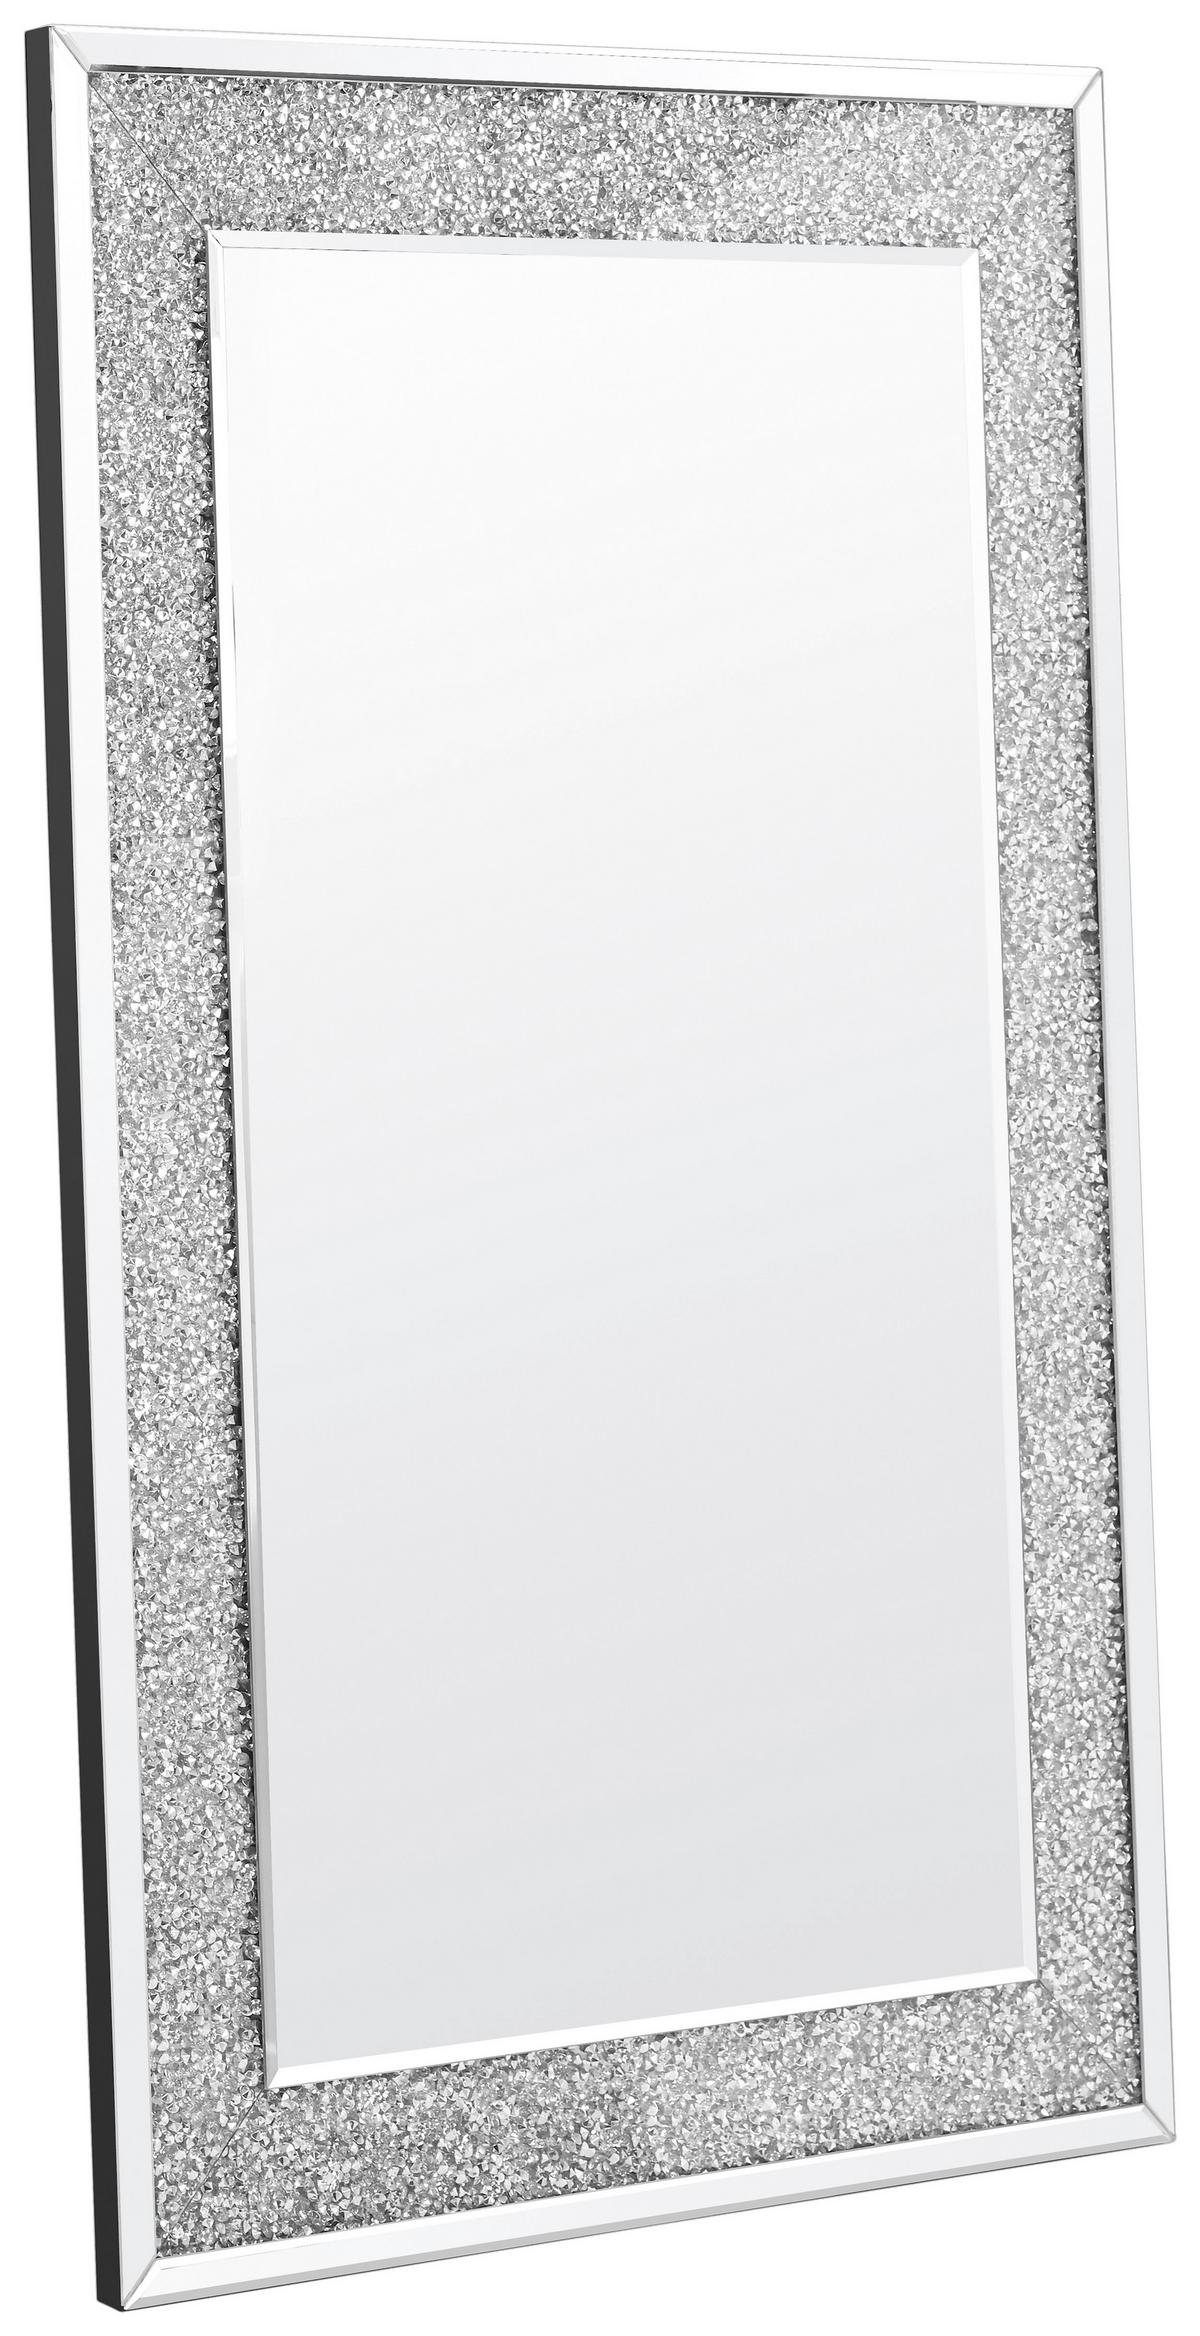  Ruomeng Wandspiegel, rechteckig, Kristall-Diamant